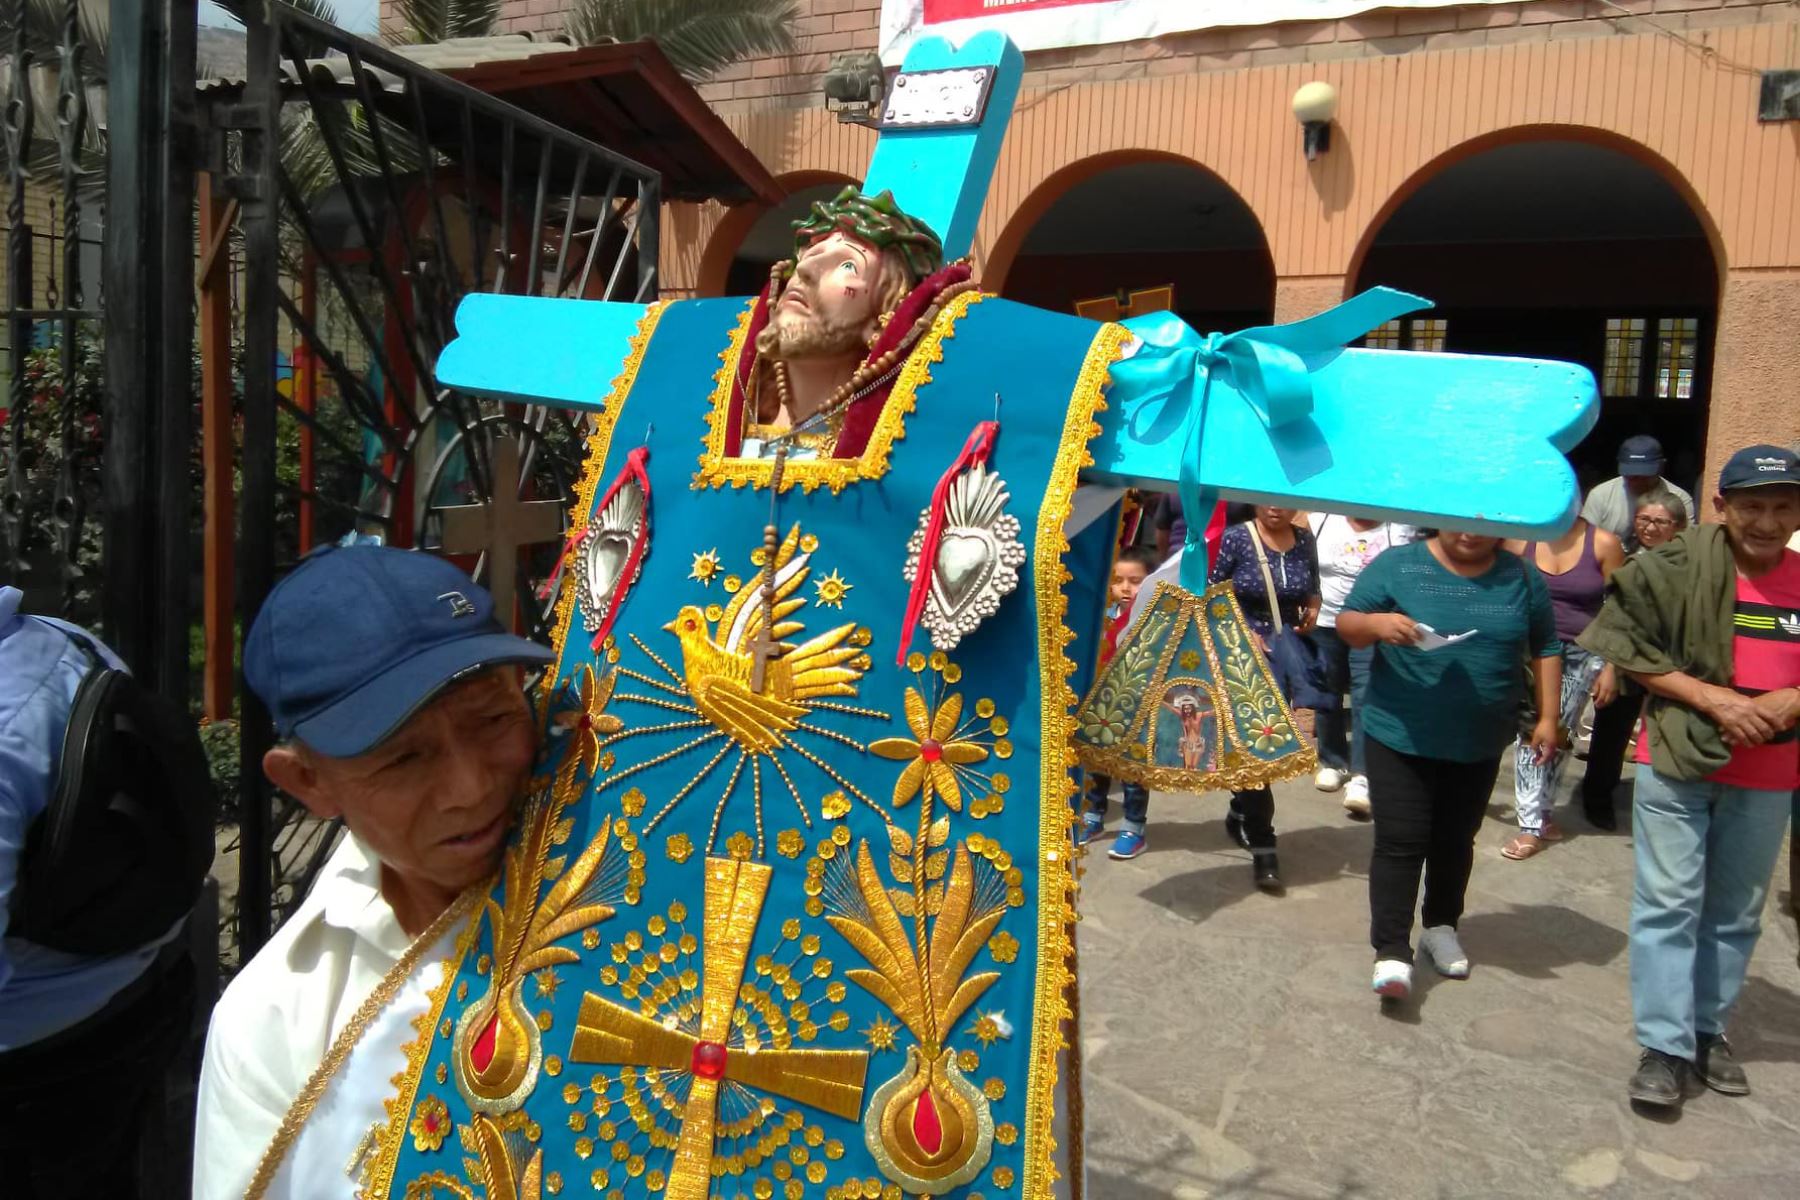 Considerada una de las más importantes celebraciones del calendario festivo regional peruano, la Fiesta de las Cruces o Cruz de Mayo se celebra, con fecha central el 3 de dicho mes, en varias provincias del Perú donde se expresa en tradiciones y costumbres rebosantes en fervor cristiano y sincretismo cultural. ANDINA/Difusión